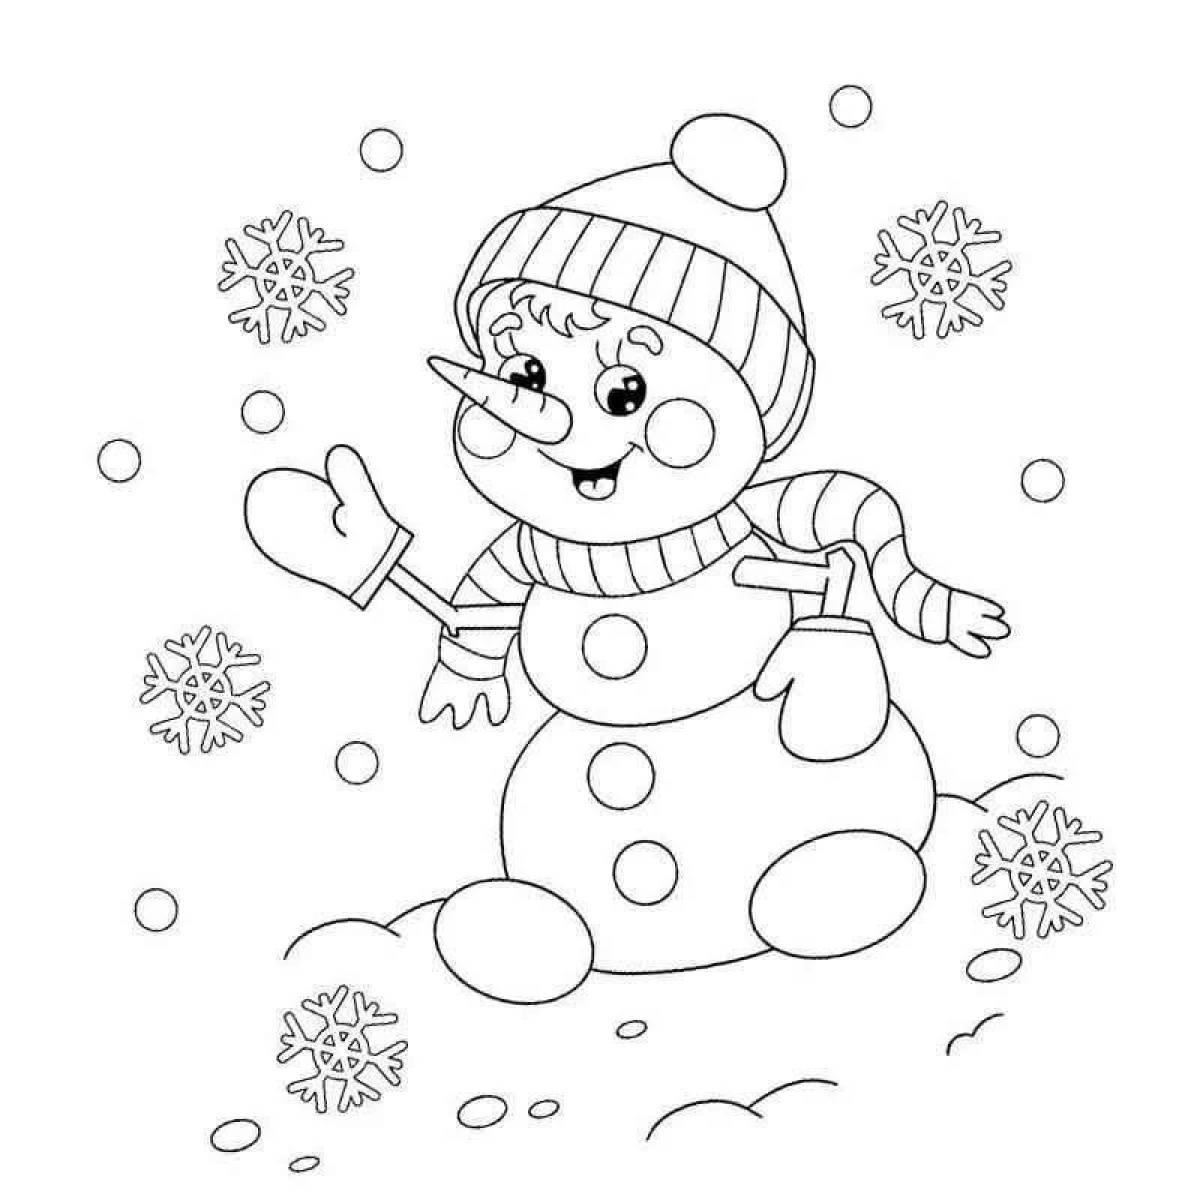 Веселая раскраска снеговик для детей 2-3 лет